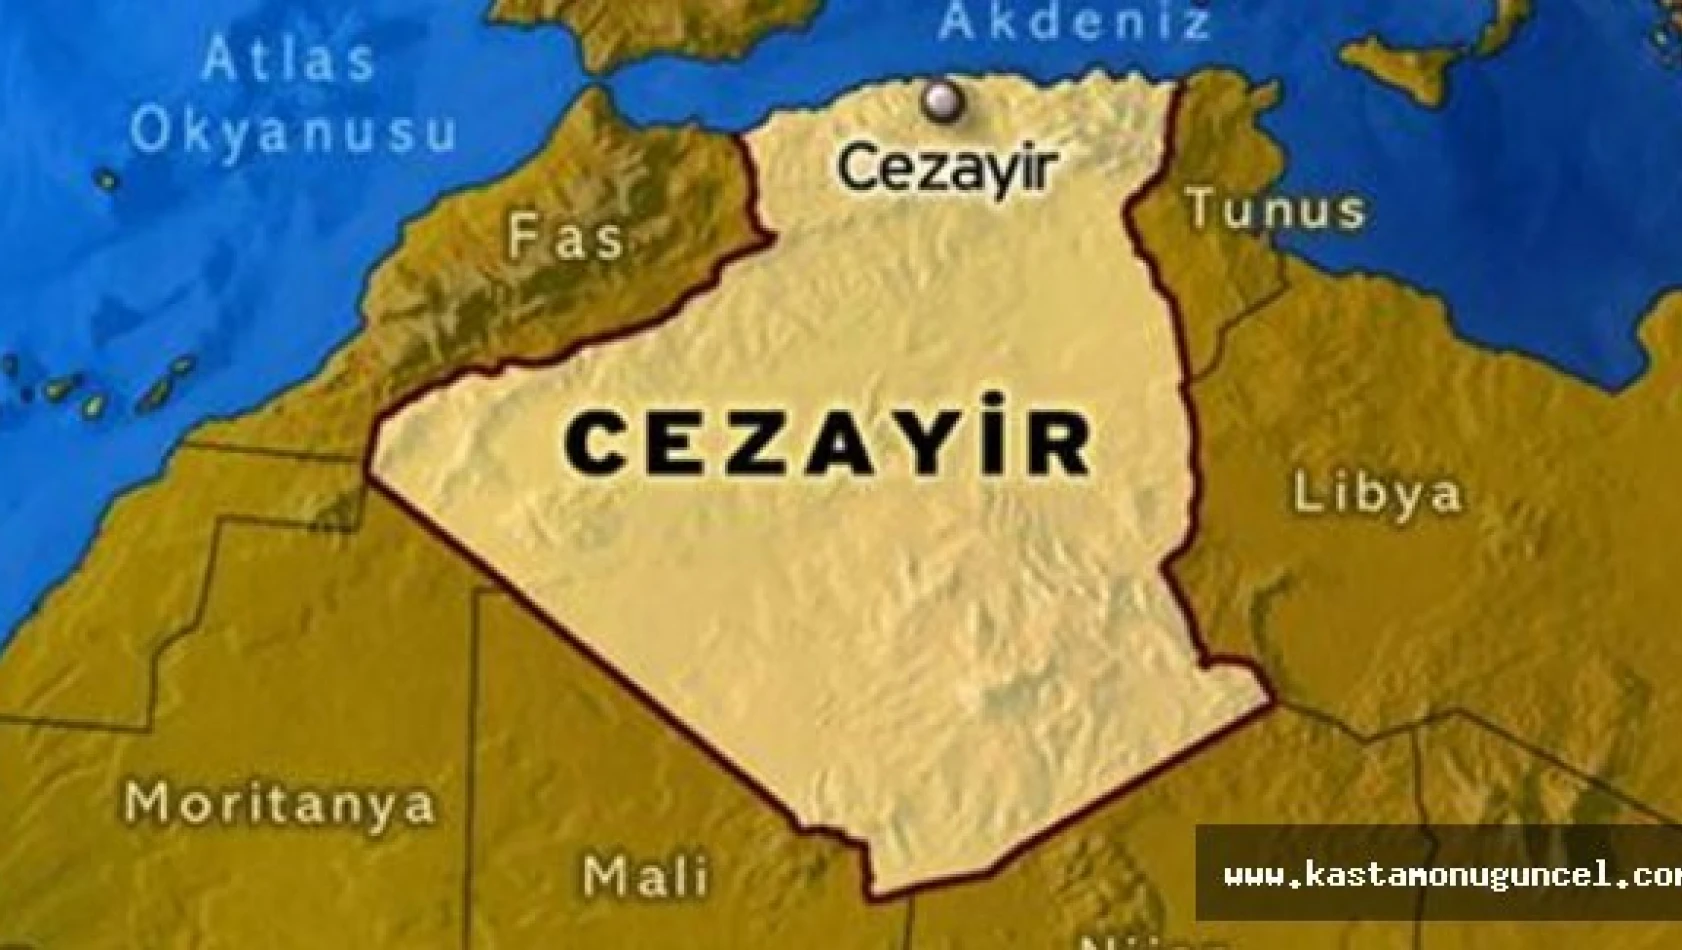 Cezayir'de katliam gibi kaza: 33 ölü, 22 yaralı